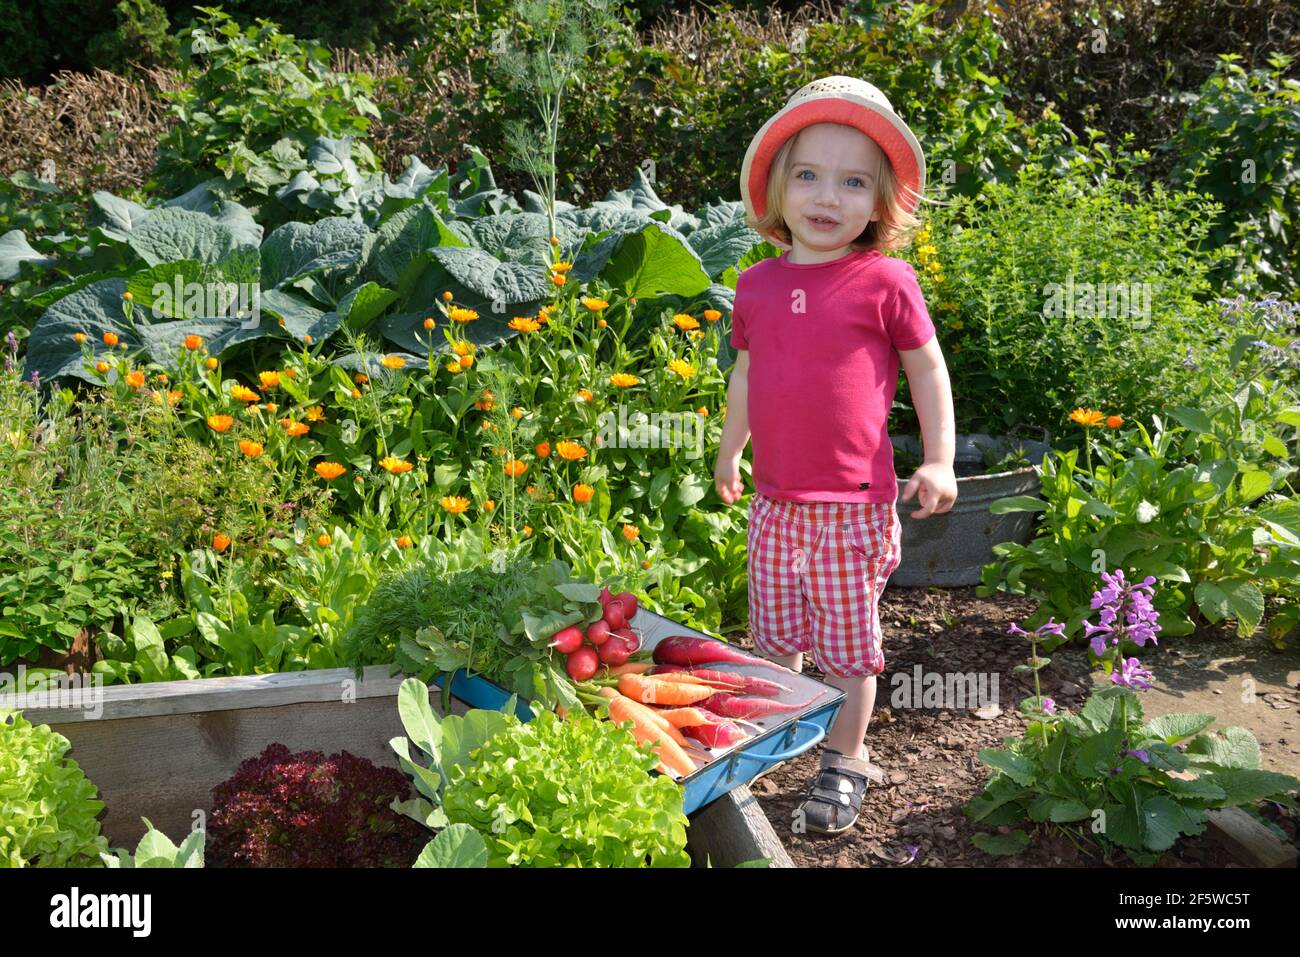 Girl in the vegetable garden Stock Photo